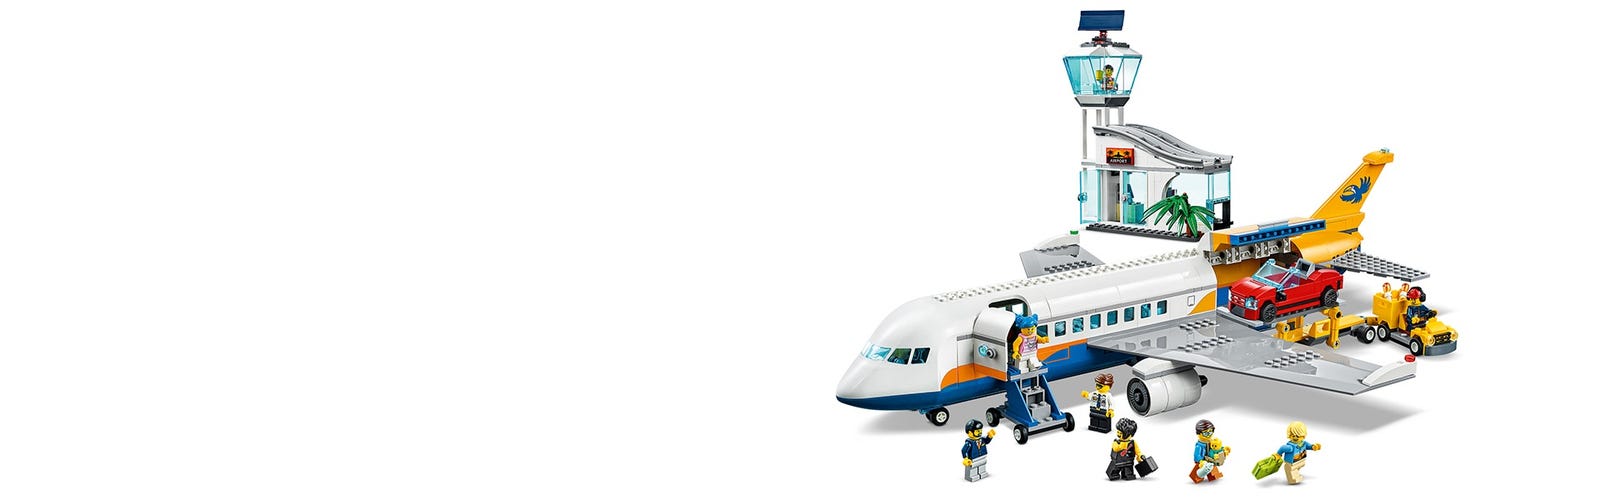 LEGO City Big Vehicles Avión de Pasajeros 60367